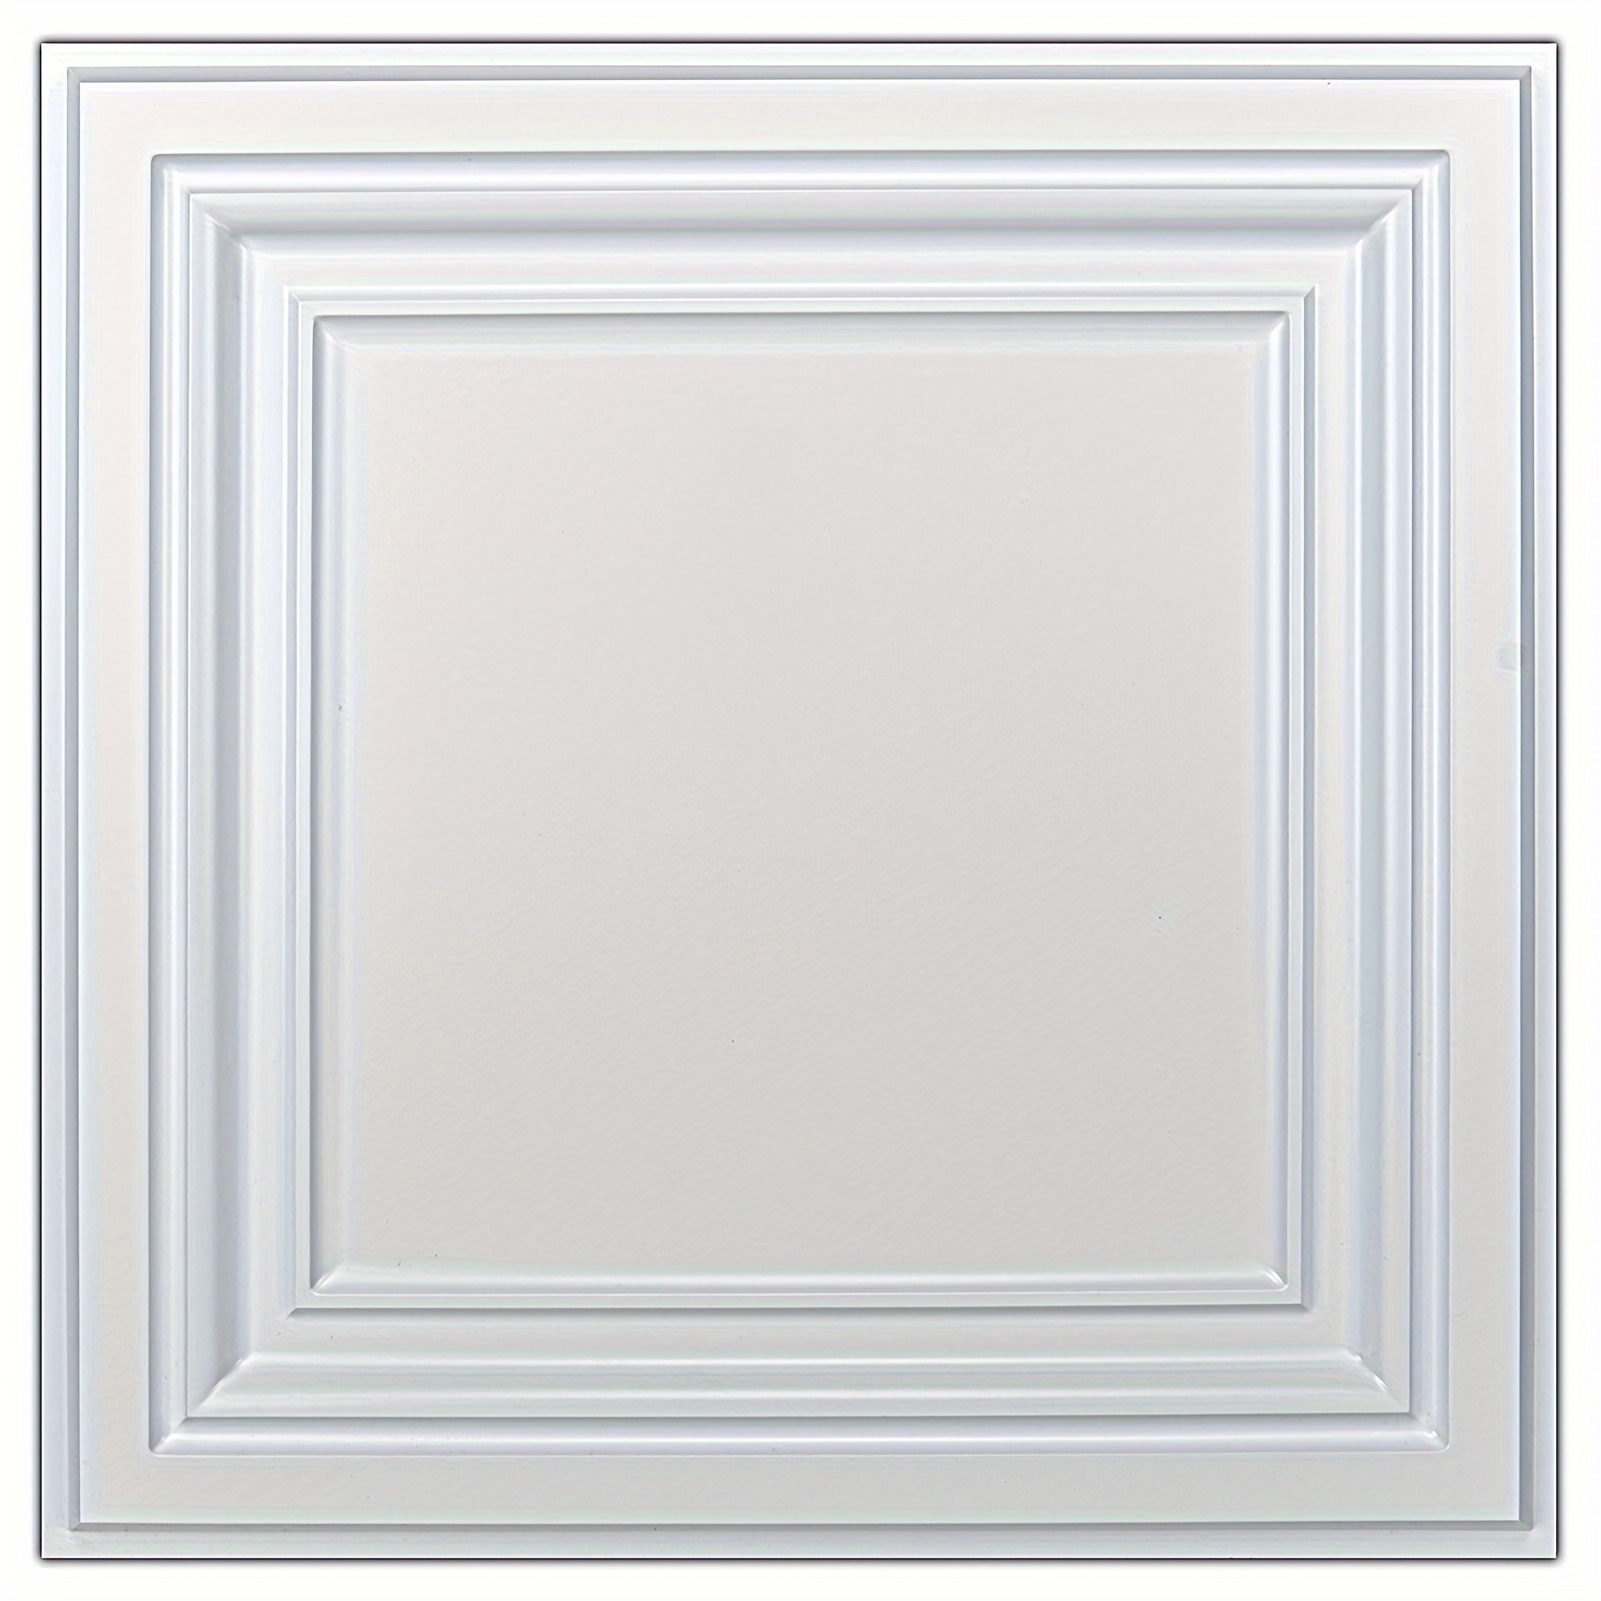 

Art3d 12-pack Pvc Ceiling Tiles, 24x24 In Plastic Sheet In White, 48 Sq.ft/case